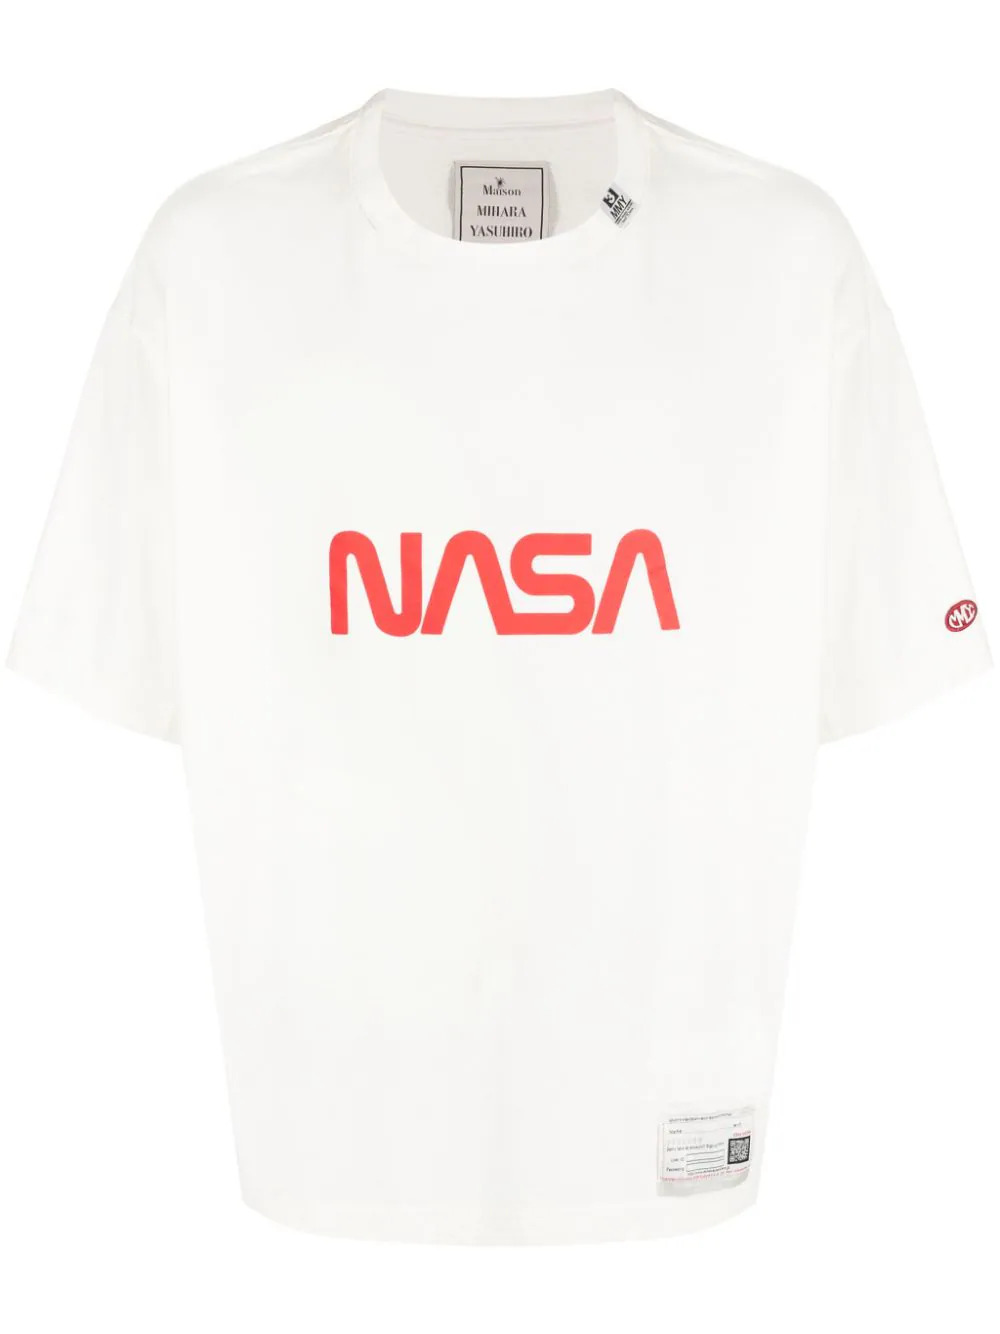 Nasa printed t-shirt